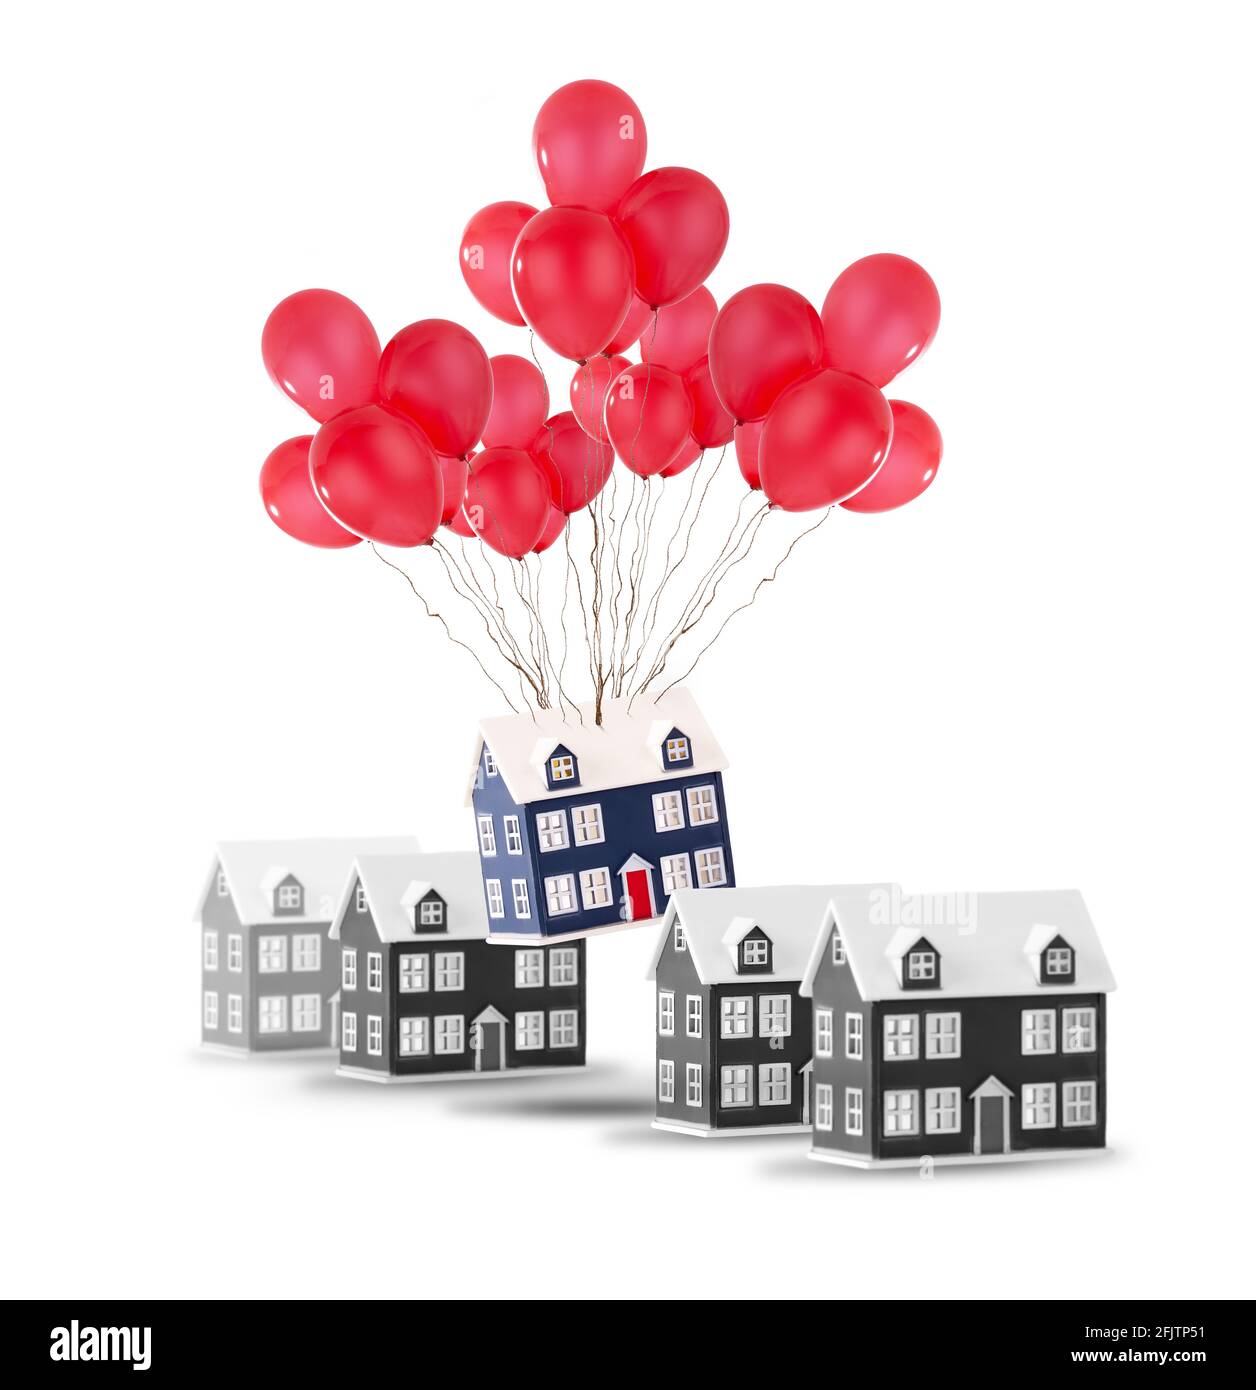 Concetto di casa in movimento che mostra una casa in una fila di case sollevando con palloncini rossi. Isolato su uno sfondo bianco con spazio per la copia Foto Stock